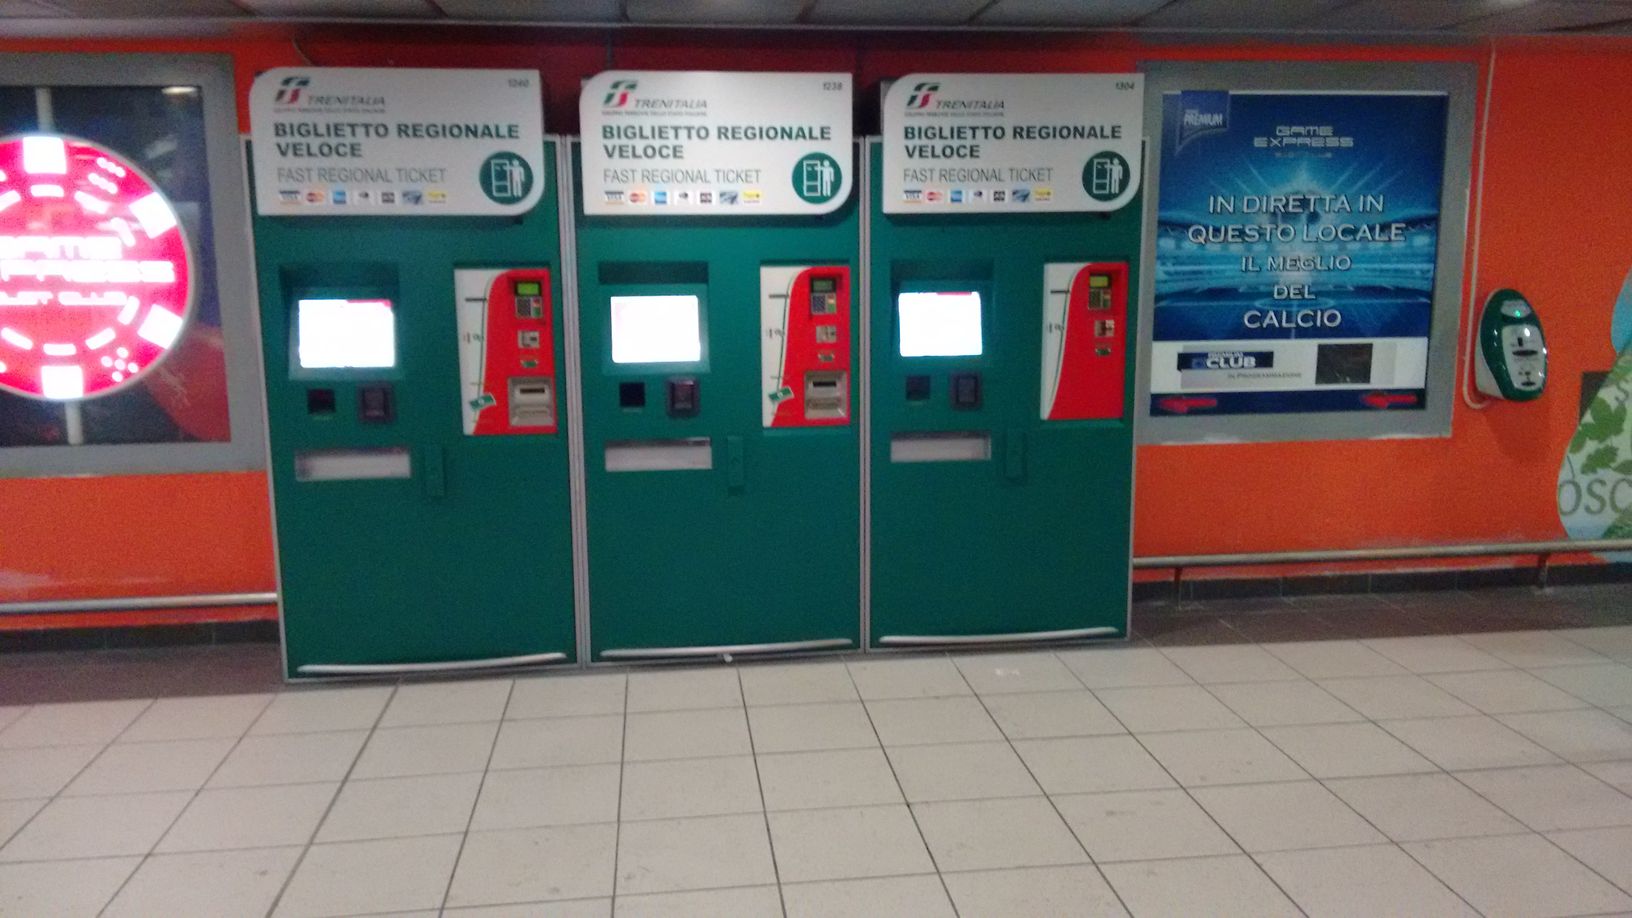  Trenitalia, Campania: nuove self service e validatrici nella stazione di Piazza Garibaldi